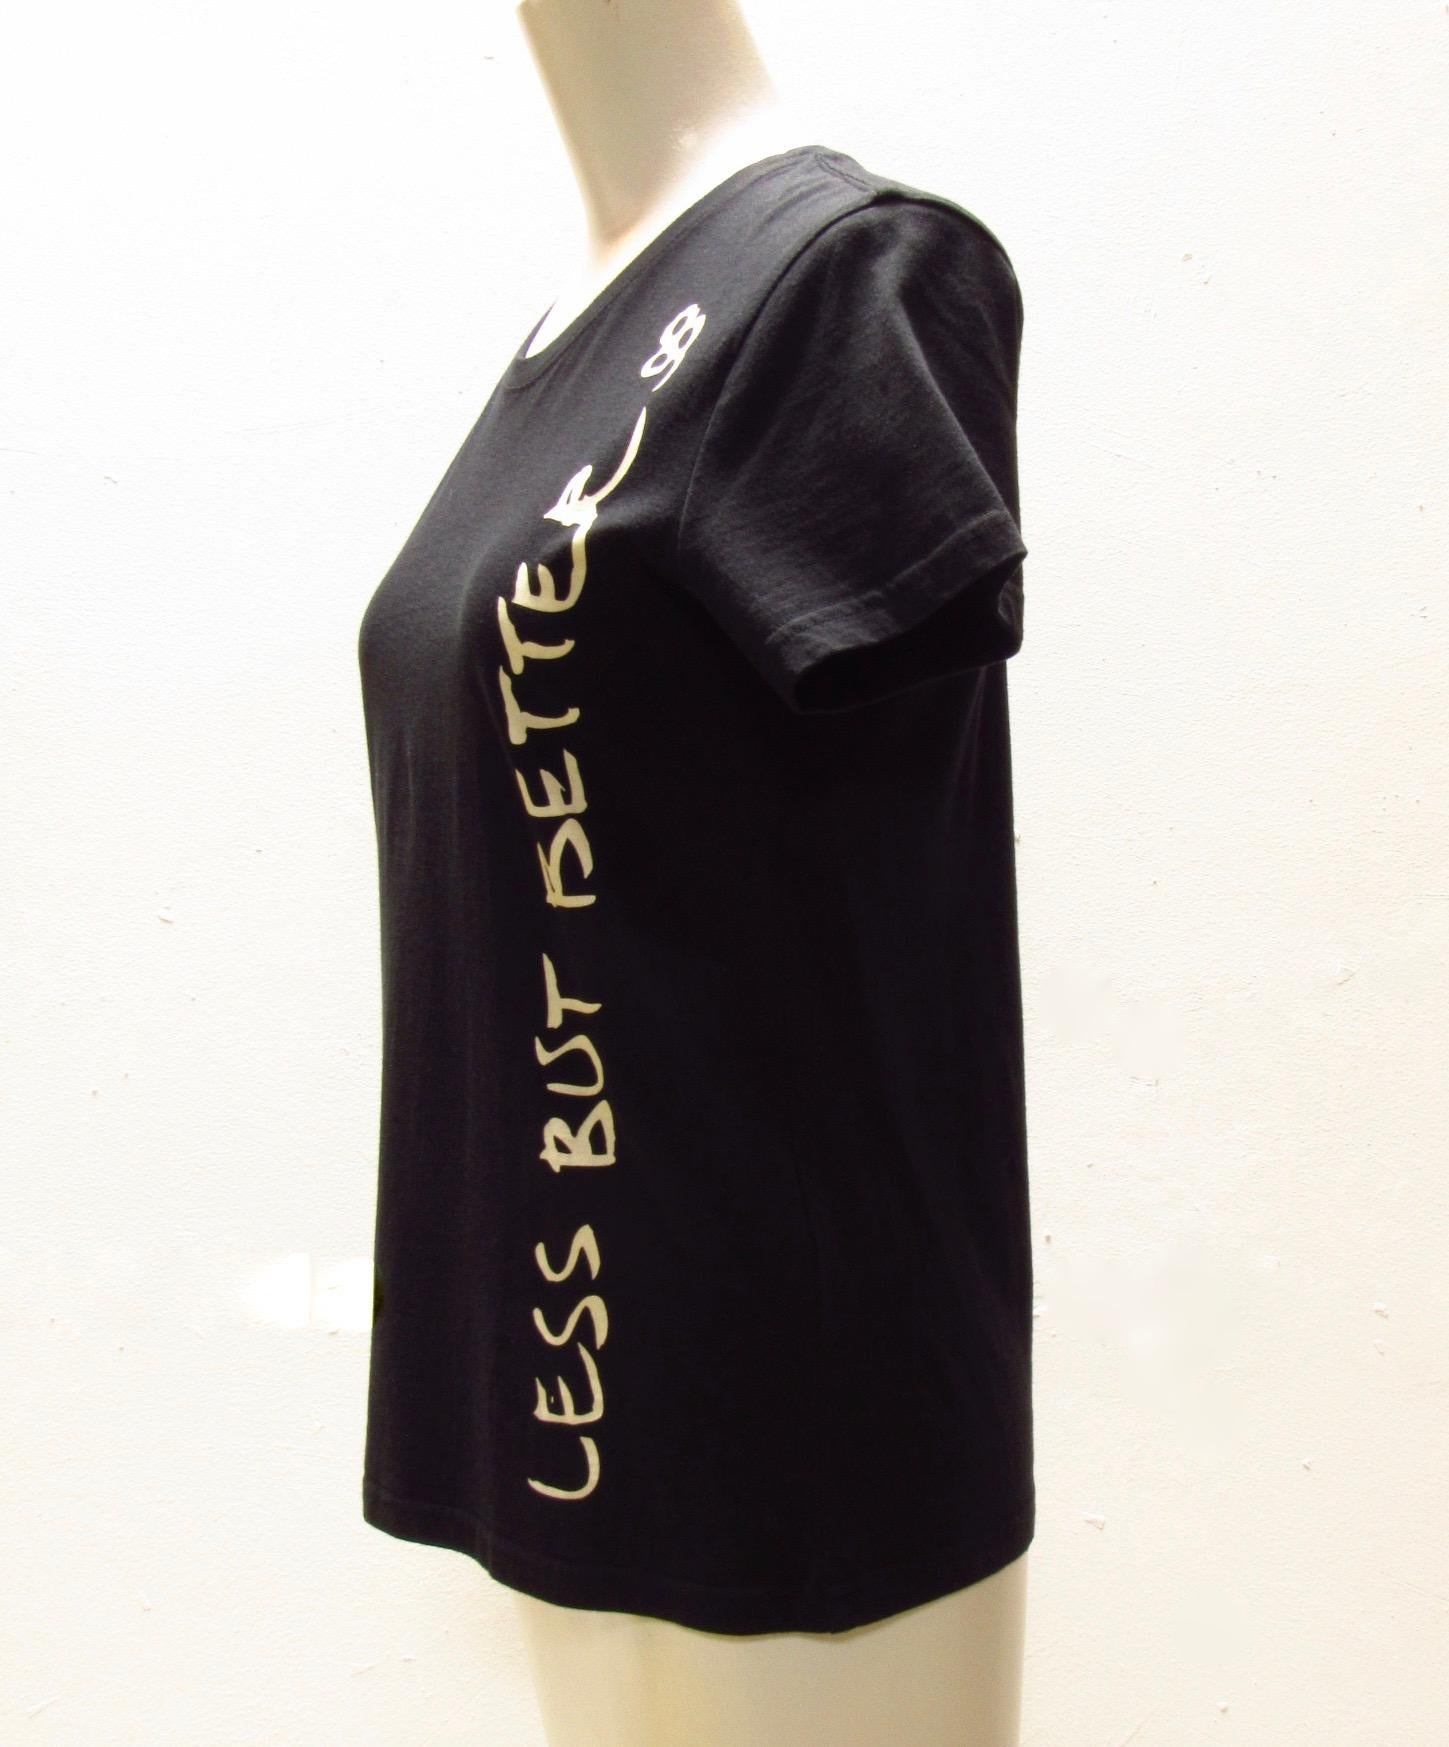 Ce tee-shirt noir 100% coton de la marque vintage Undercover est orné du message 